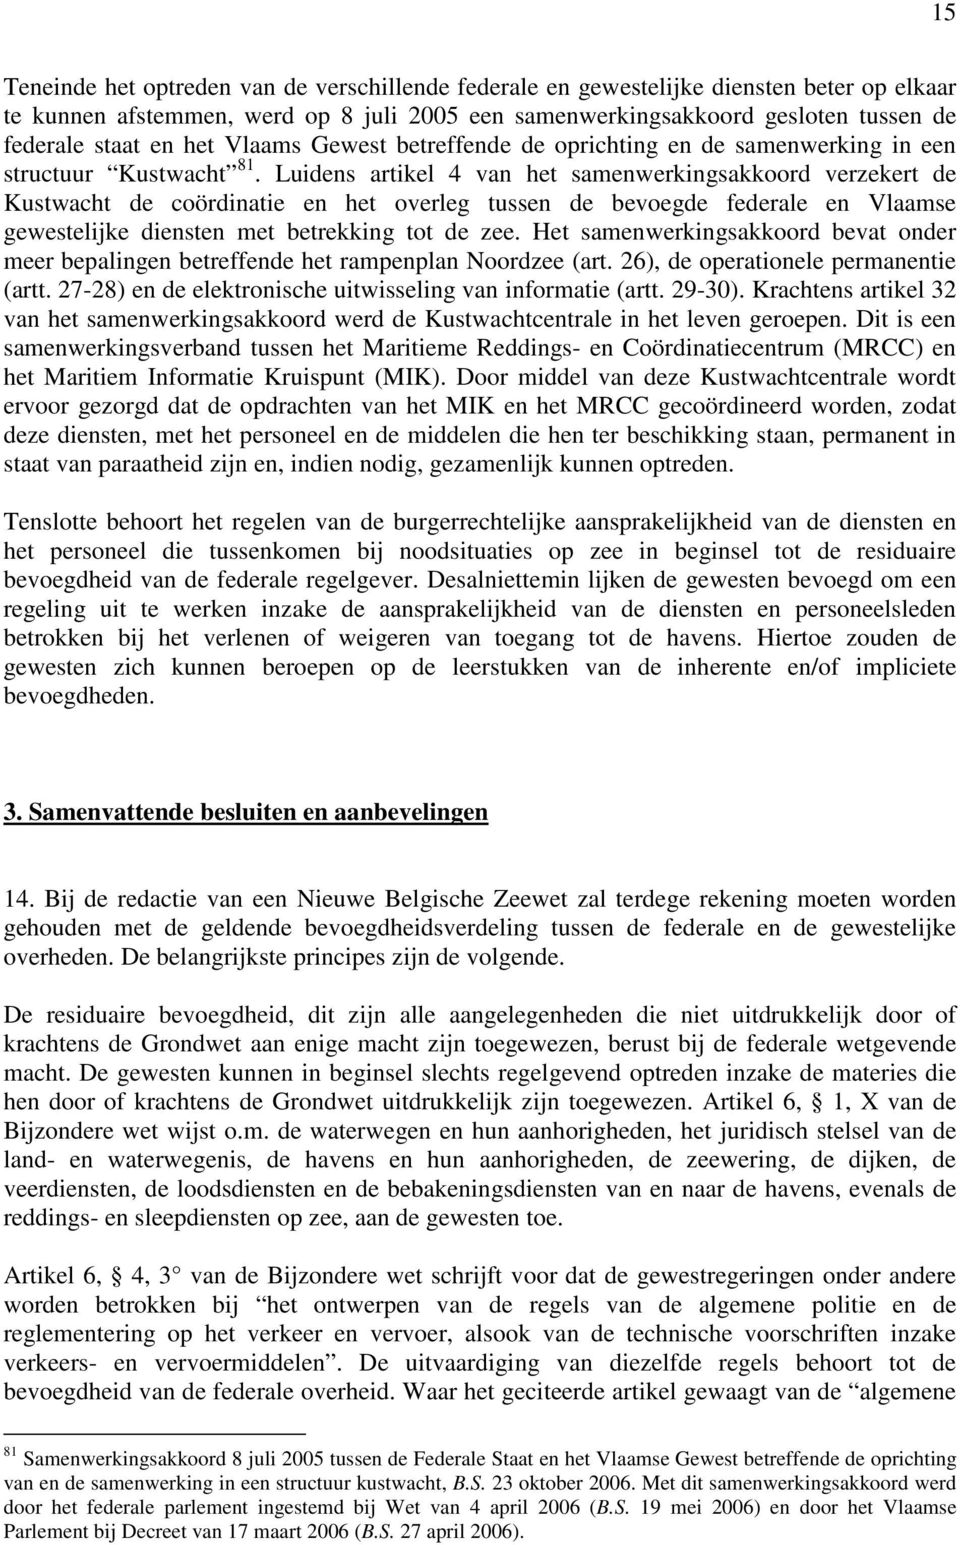 Luidens artikel 4 van het samenwerkingsakkoord verzekert de Kustwacht de coördinatie en het overleg tussen de bevoegde federale en Vlaamse gewestelijke diensten met betrekking tot de zee.